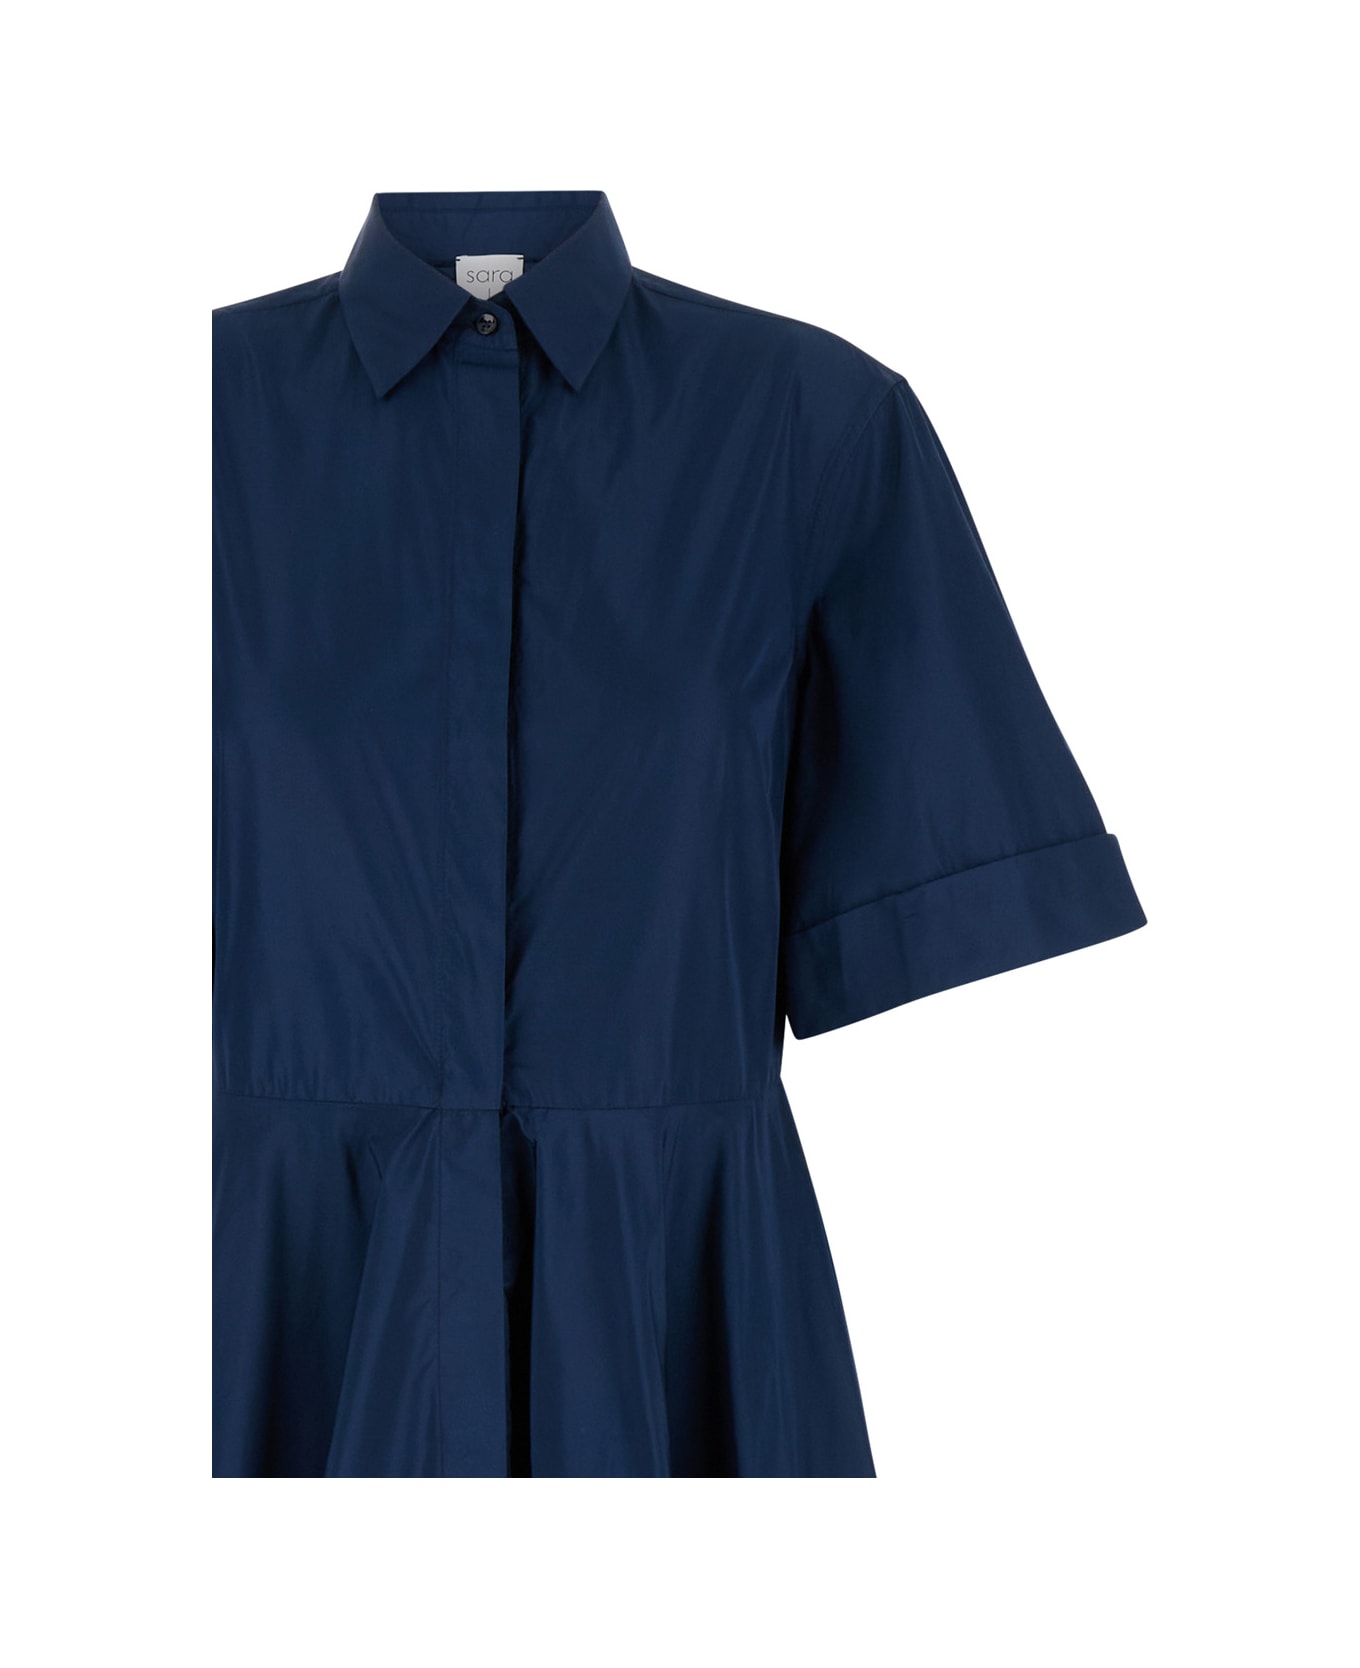 Sara Roka Blue Popline Midi Dress In Crepe Fabric Woman - Blu